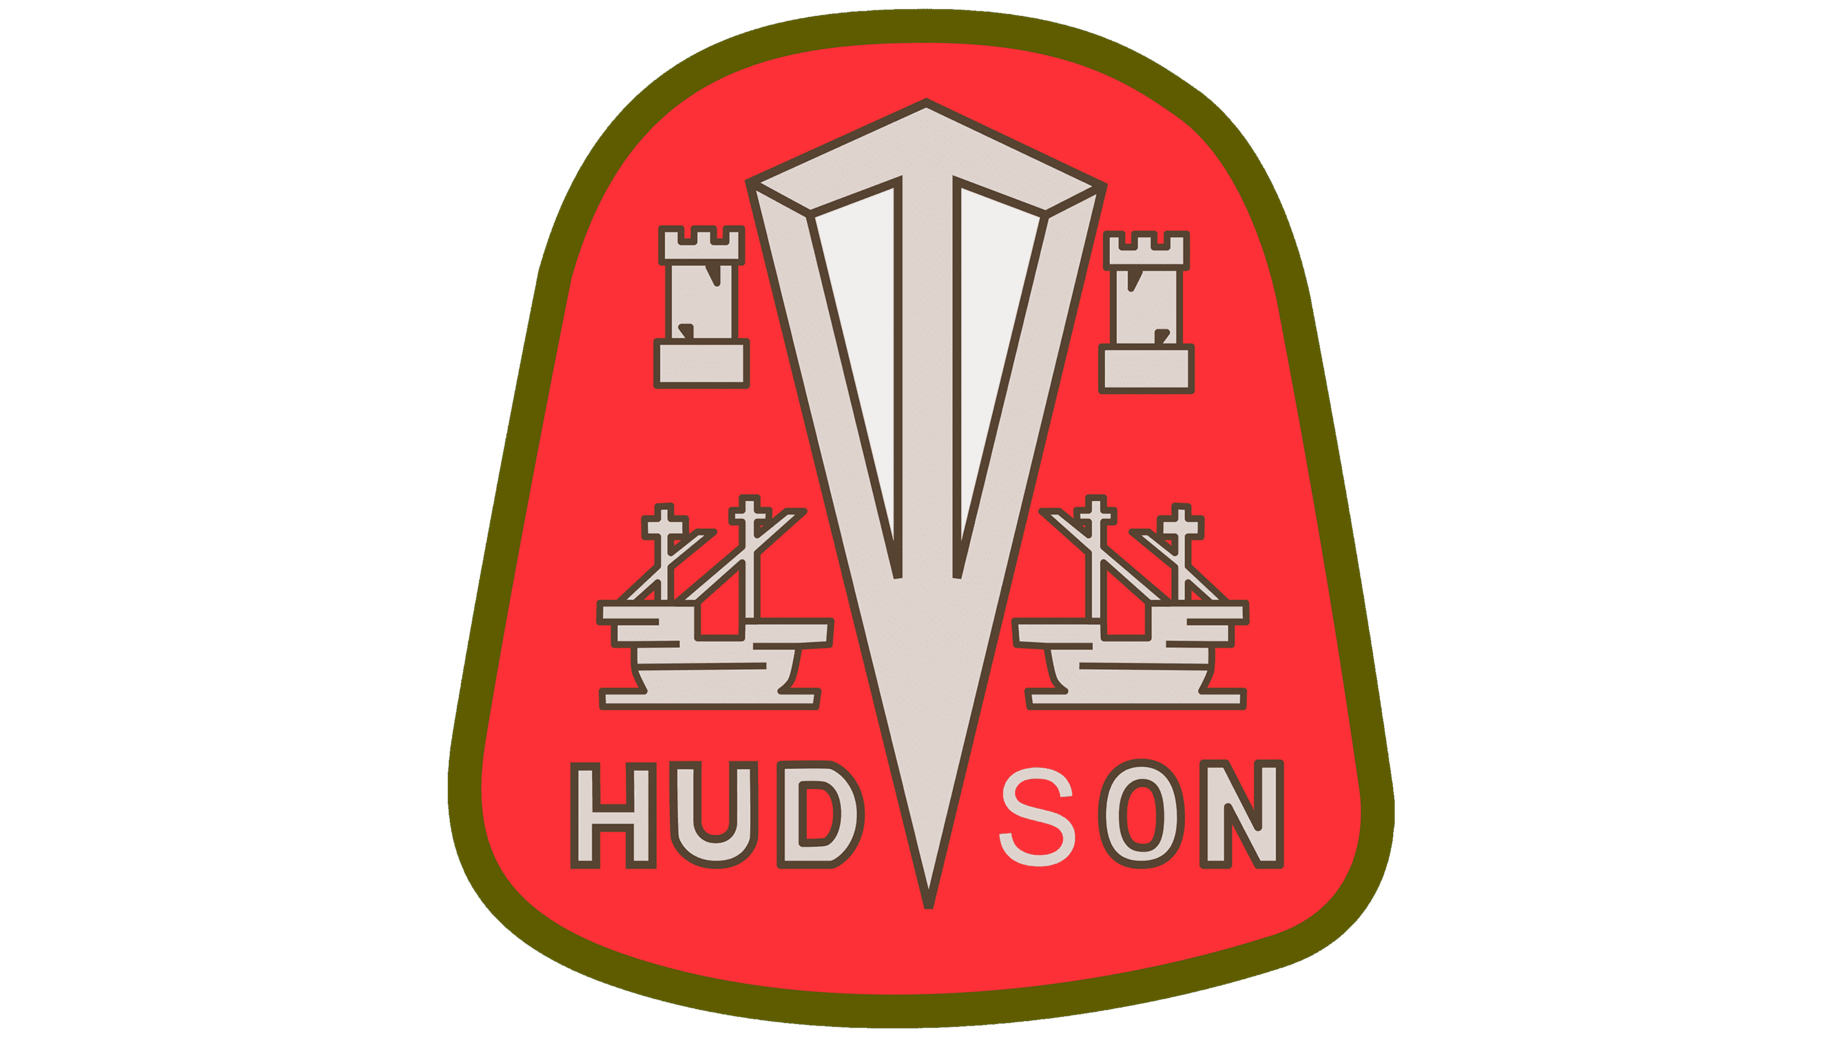 Hudson sign